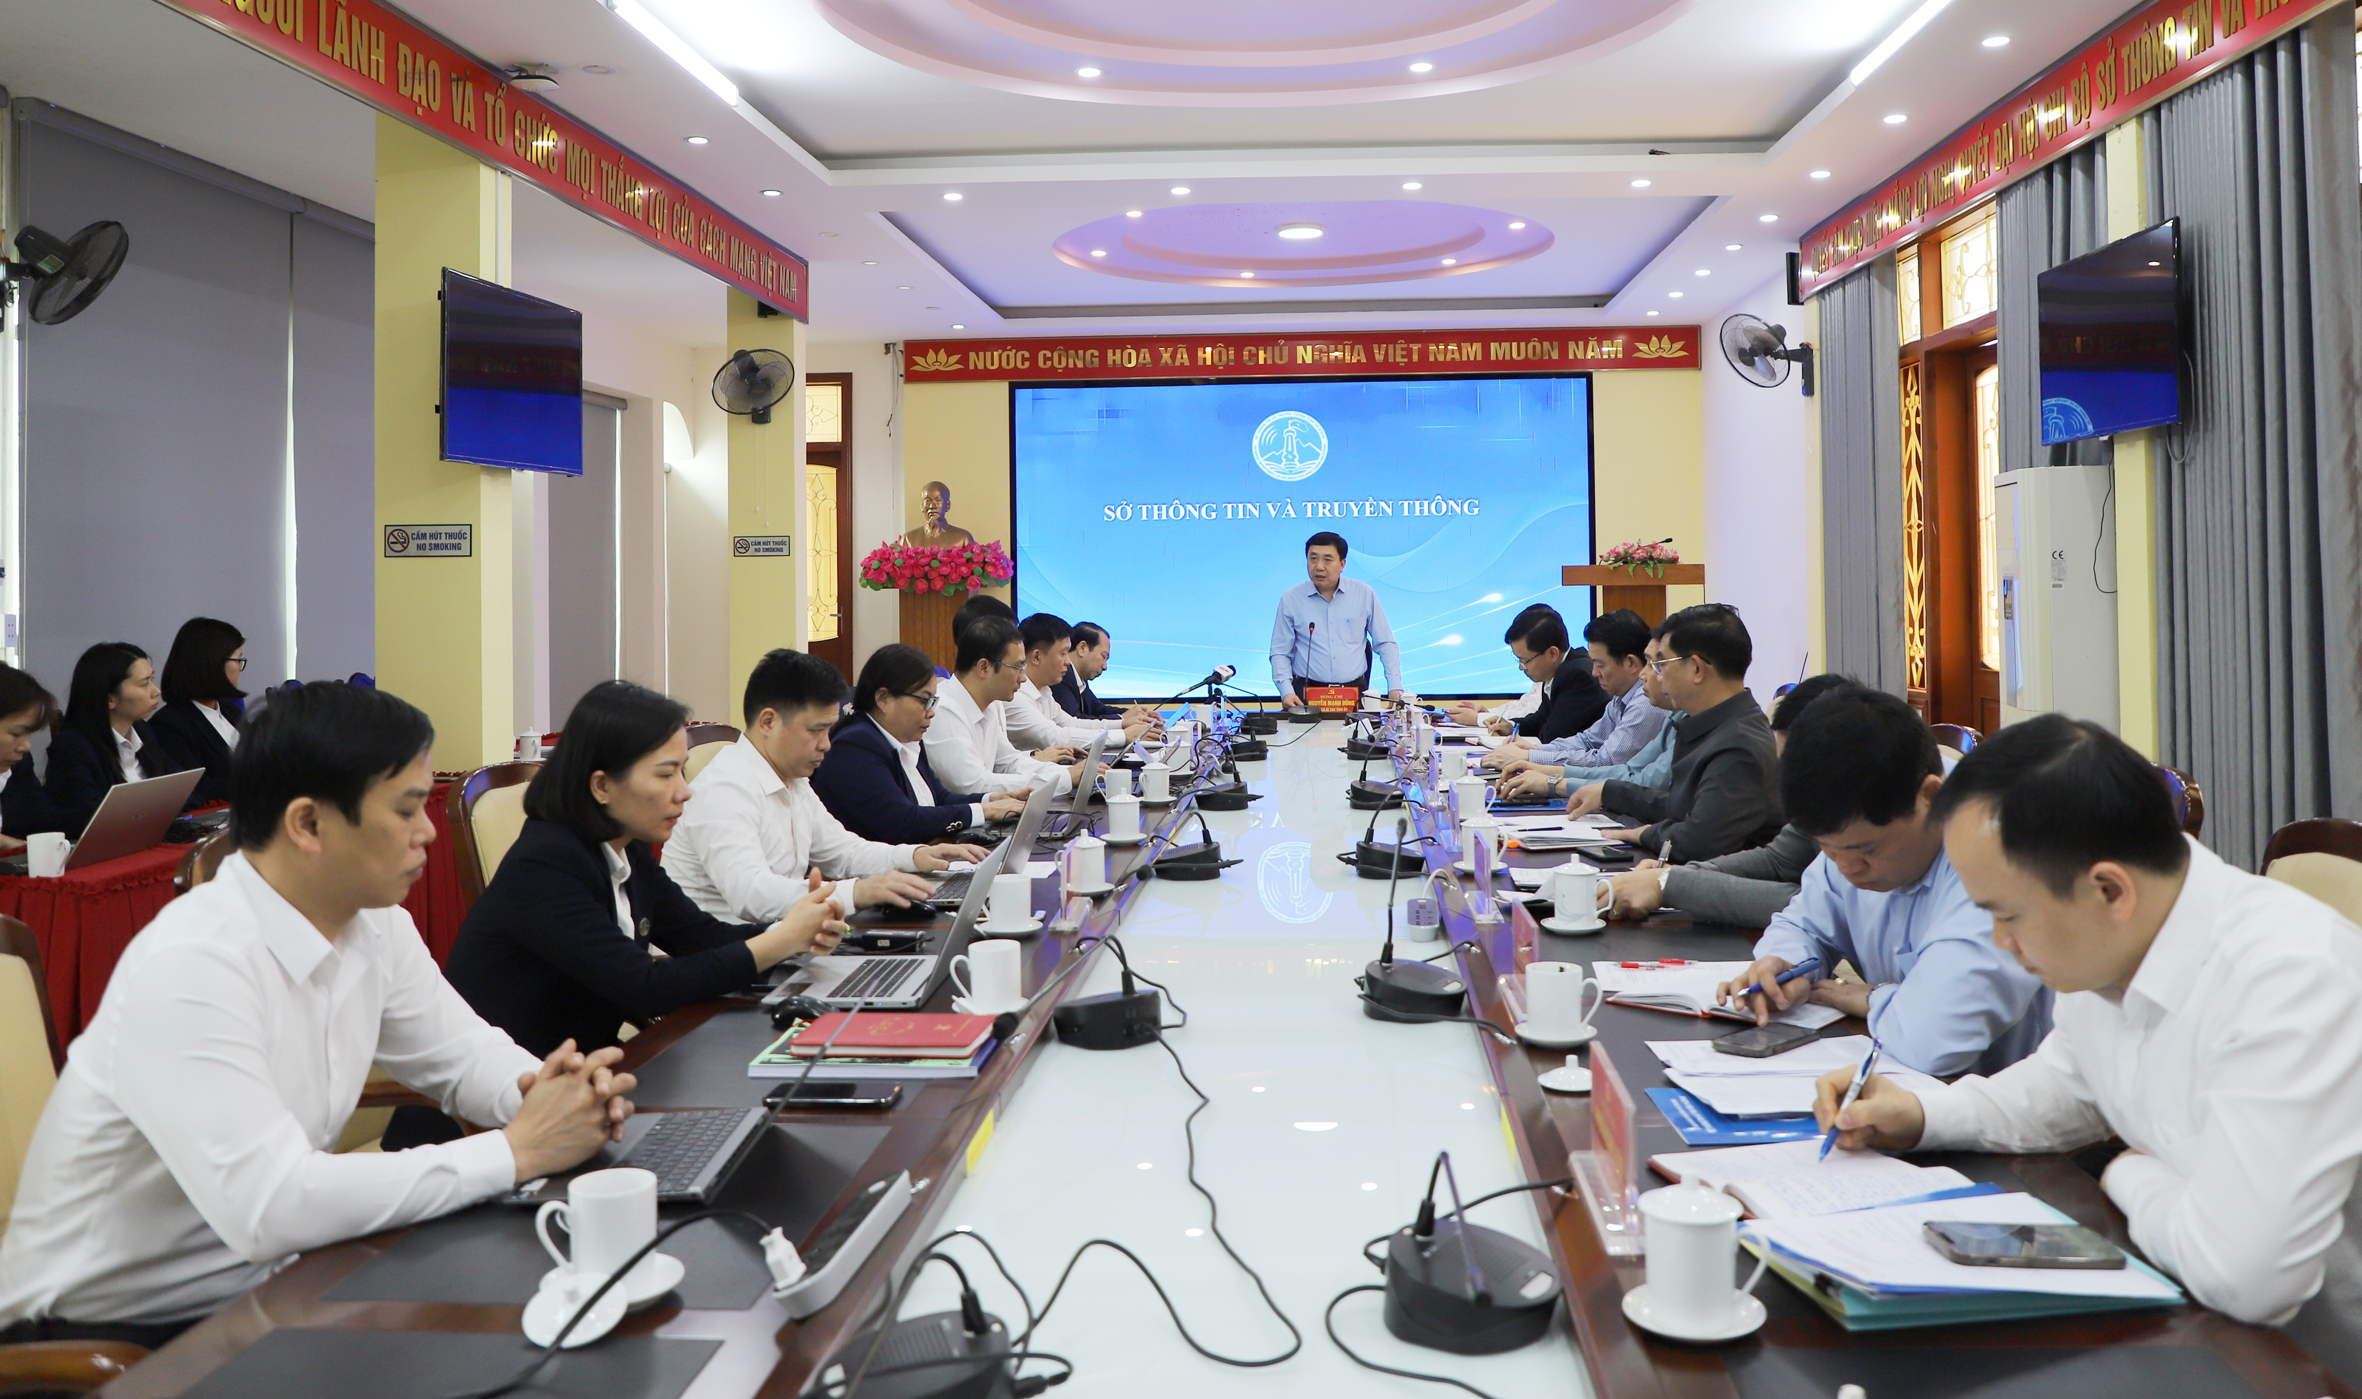 Quyền Bí thư Tỉnh ủy Nguyễn Mạnh Dũng: Cần xác định chuyển đổi số là động lực cho phát triển